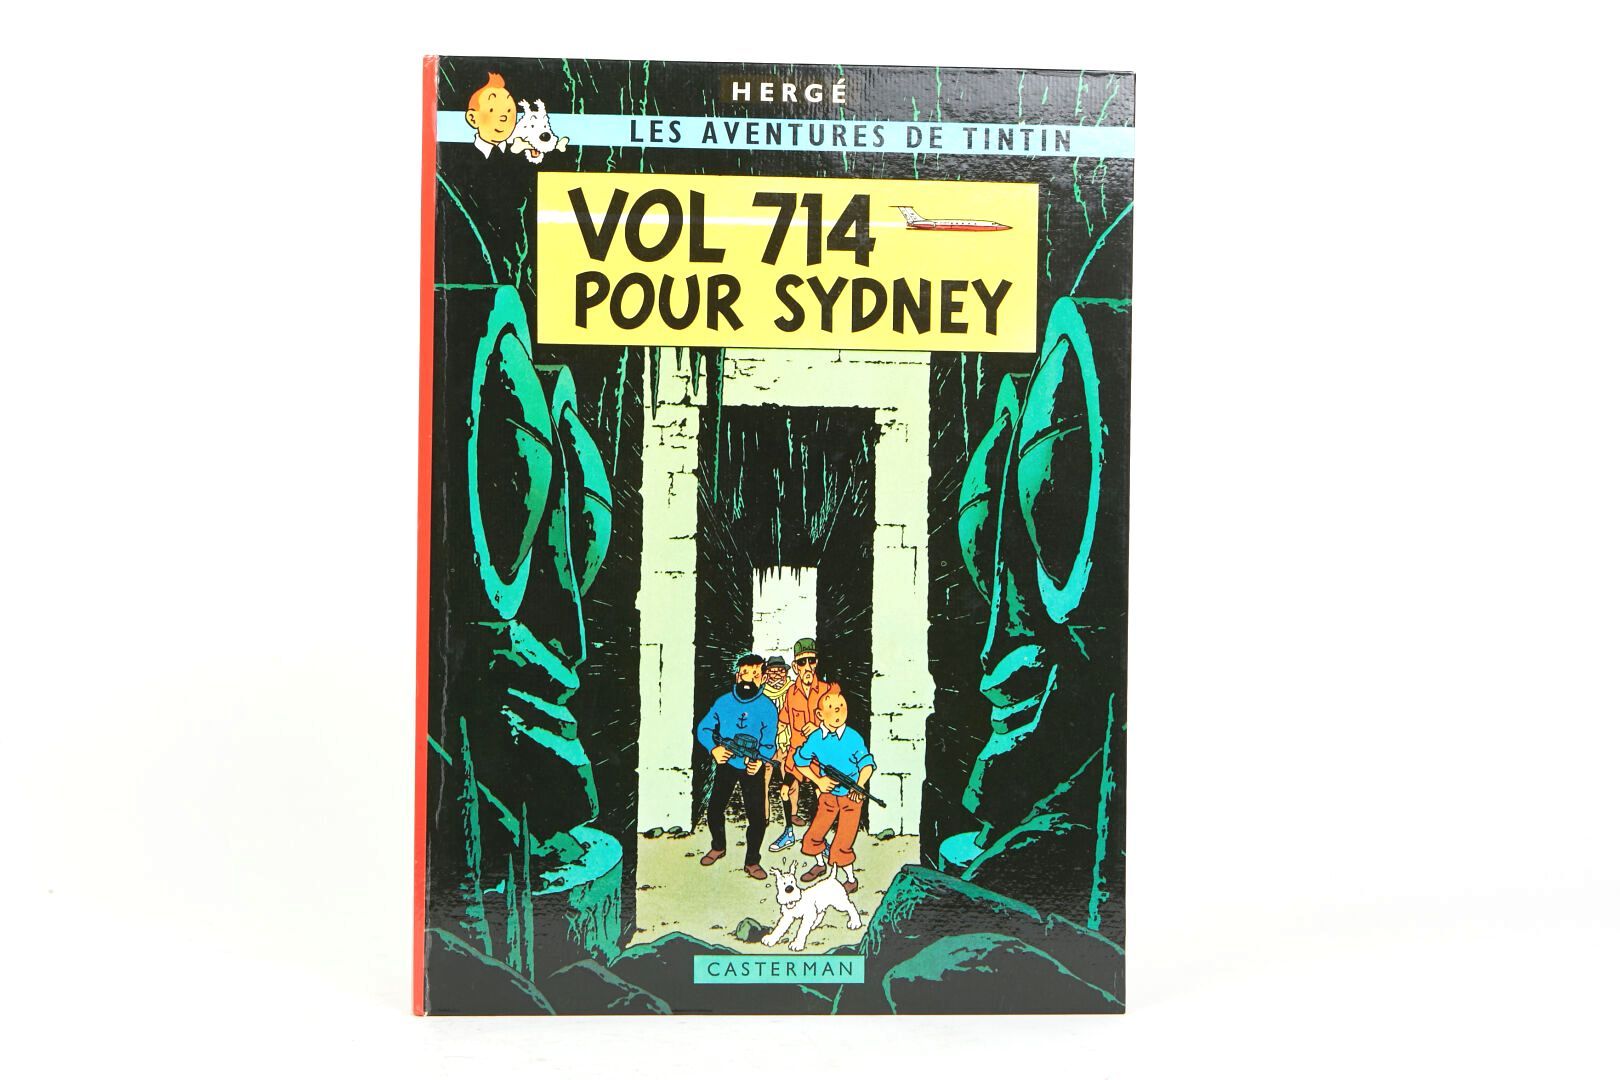 Null "1968年飞往悉尼的714航班
第42页 "你要告诉我在哪个强盗的洞穴里"。 
第2次印刷。

Hergé/Tintinimaginatio 202&hellip;